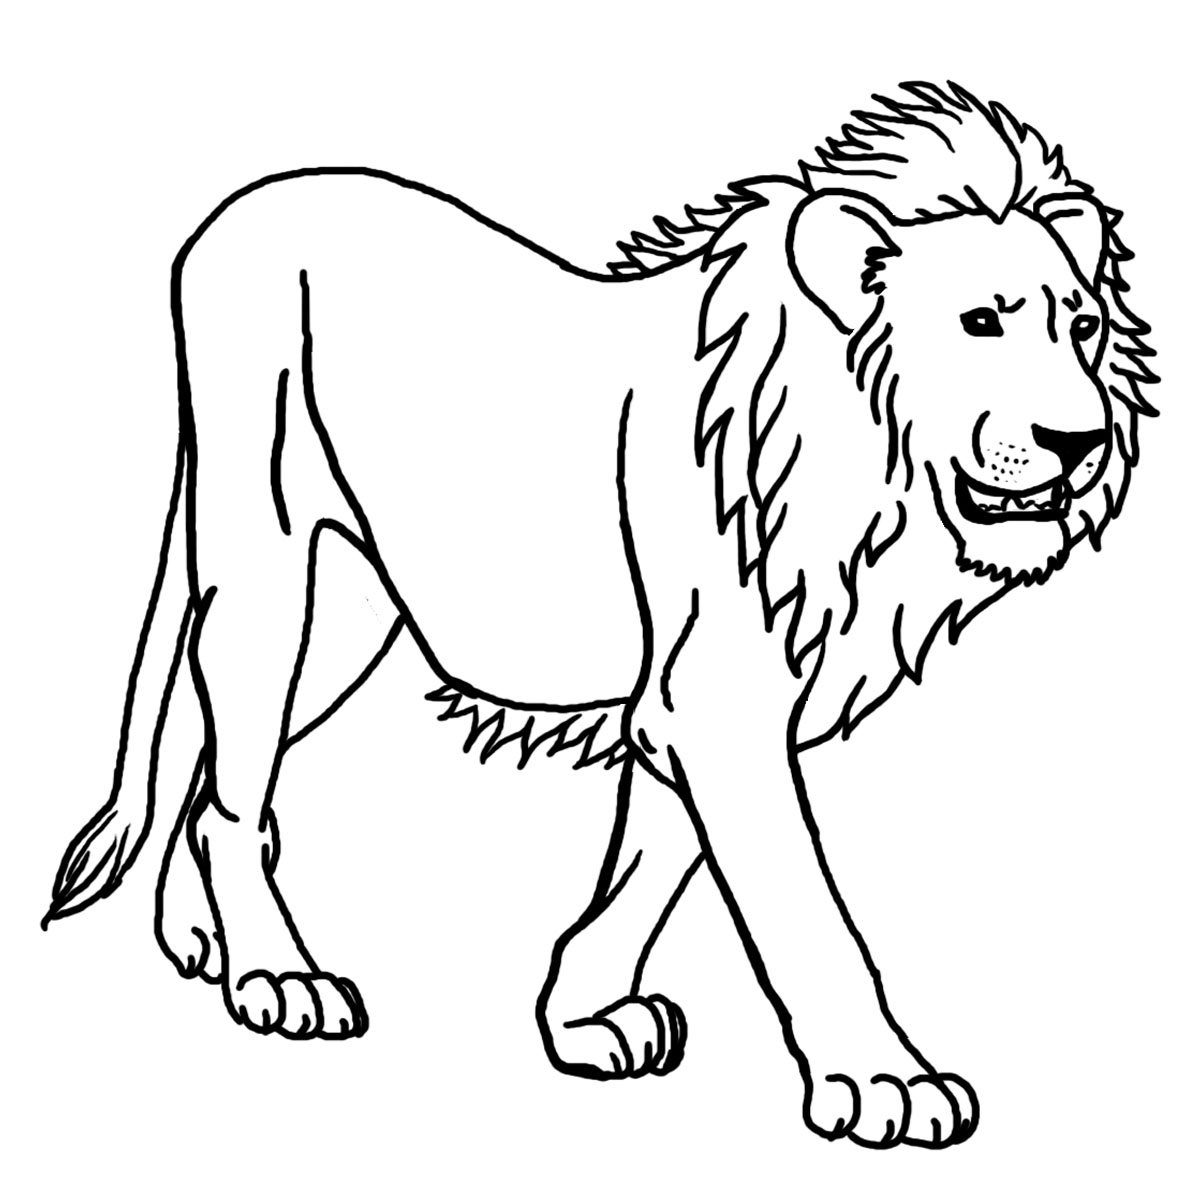 Xem hơn 100 ảnh về hình vẽ sư tử ngầu  NEC